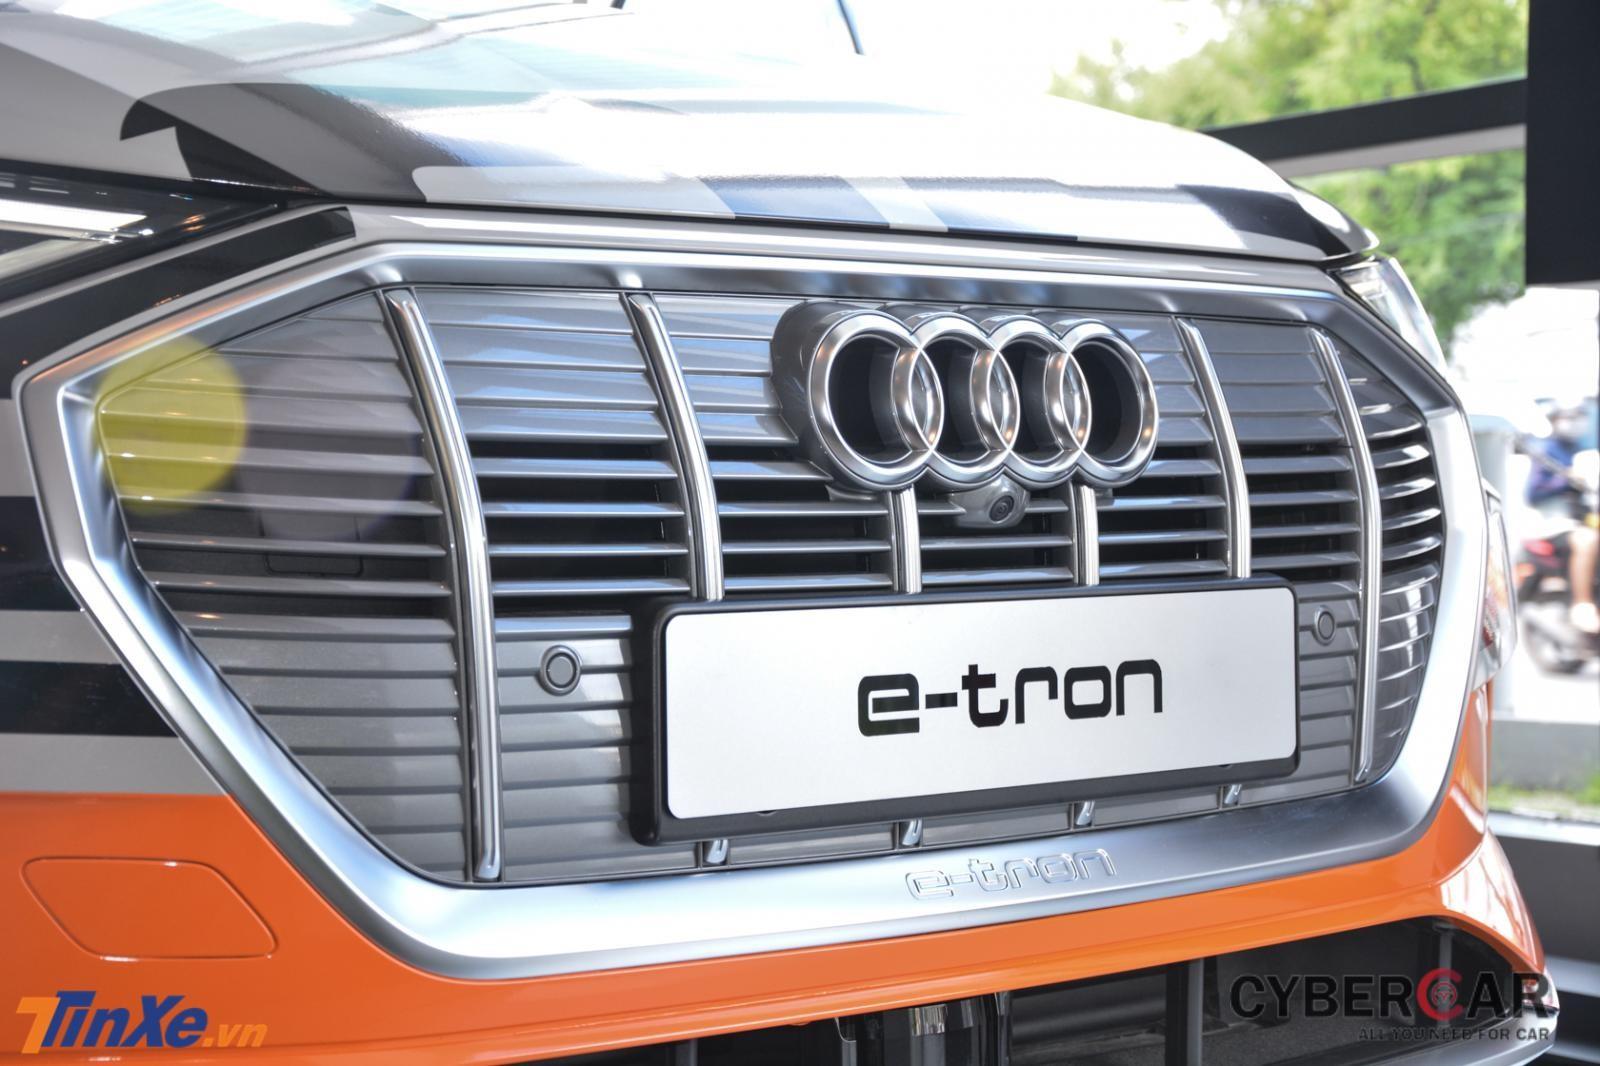 Audi e-tron mang lưới tản nhiệt khung đơn hình bát giác với các thanh dọc